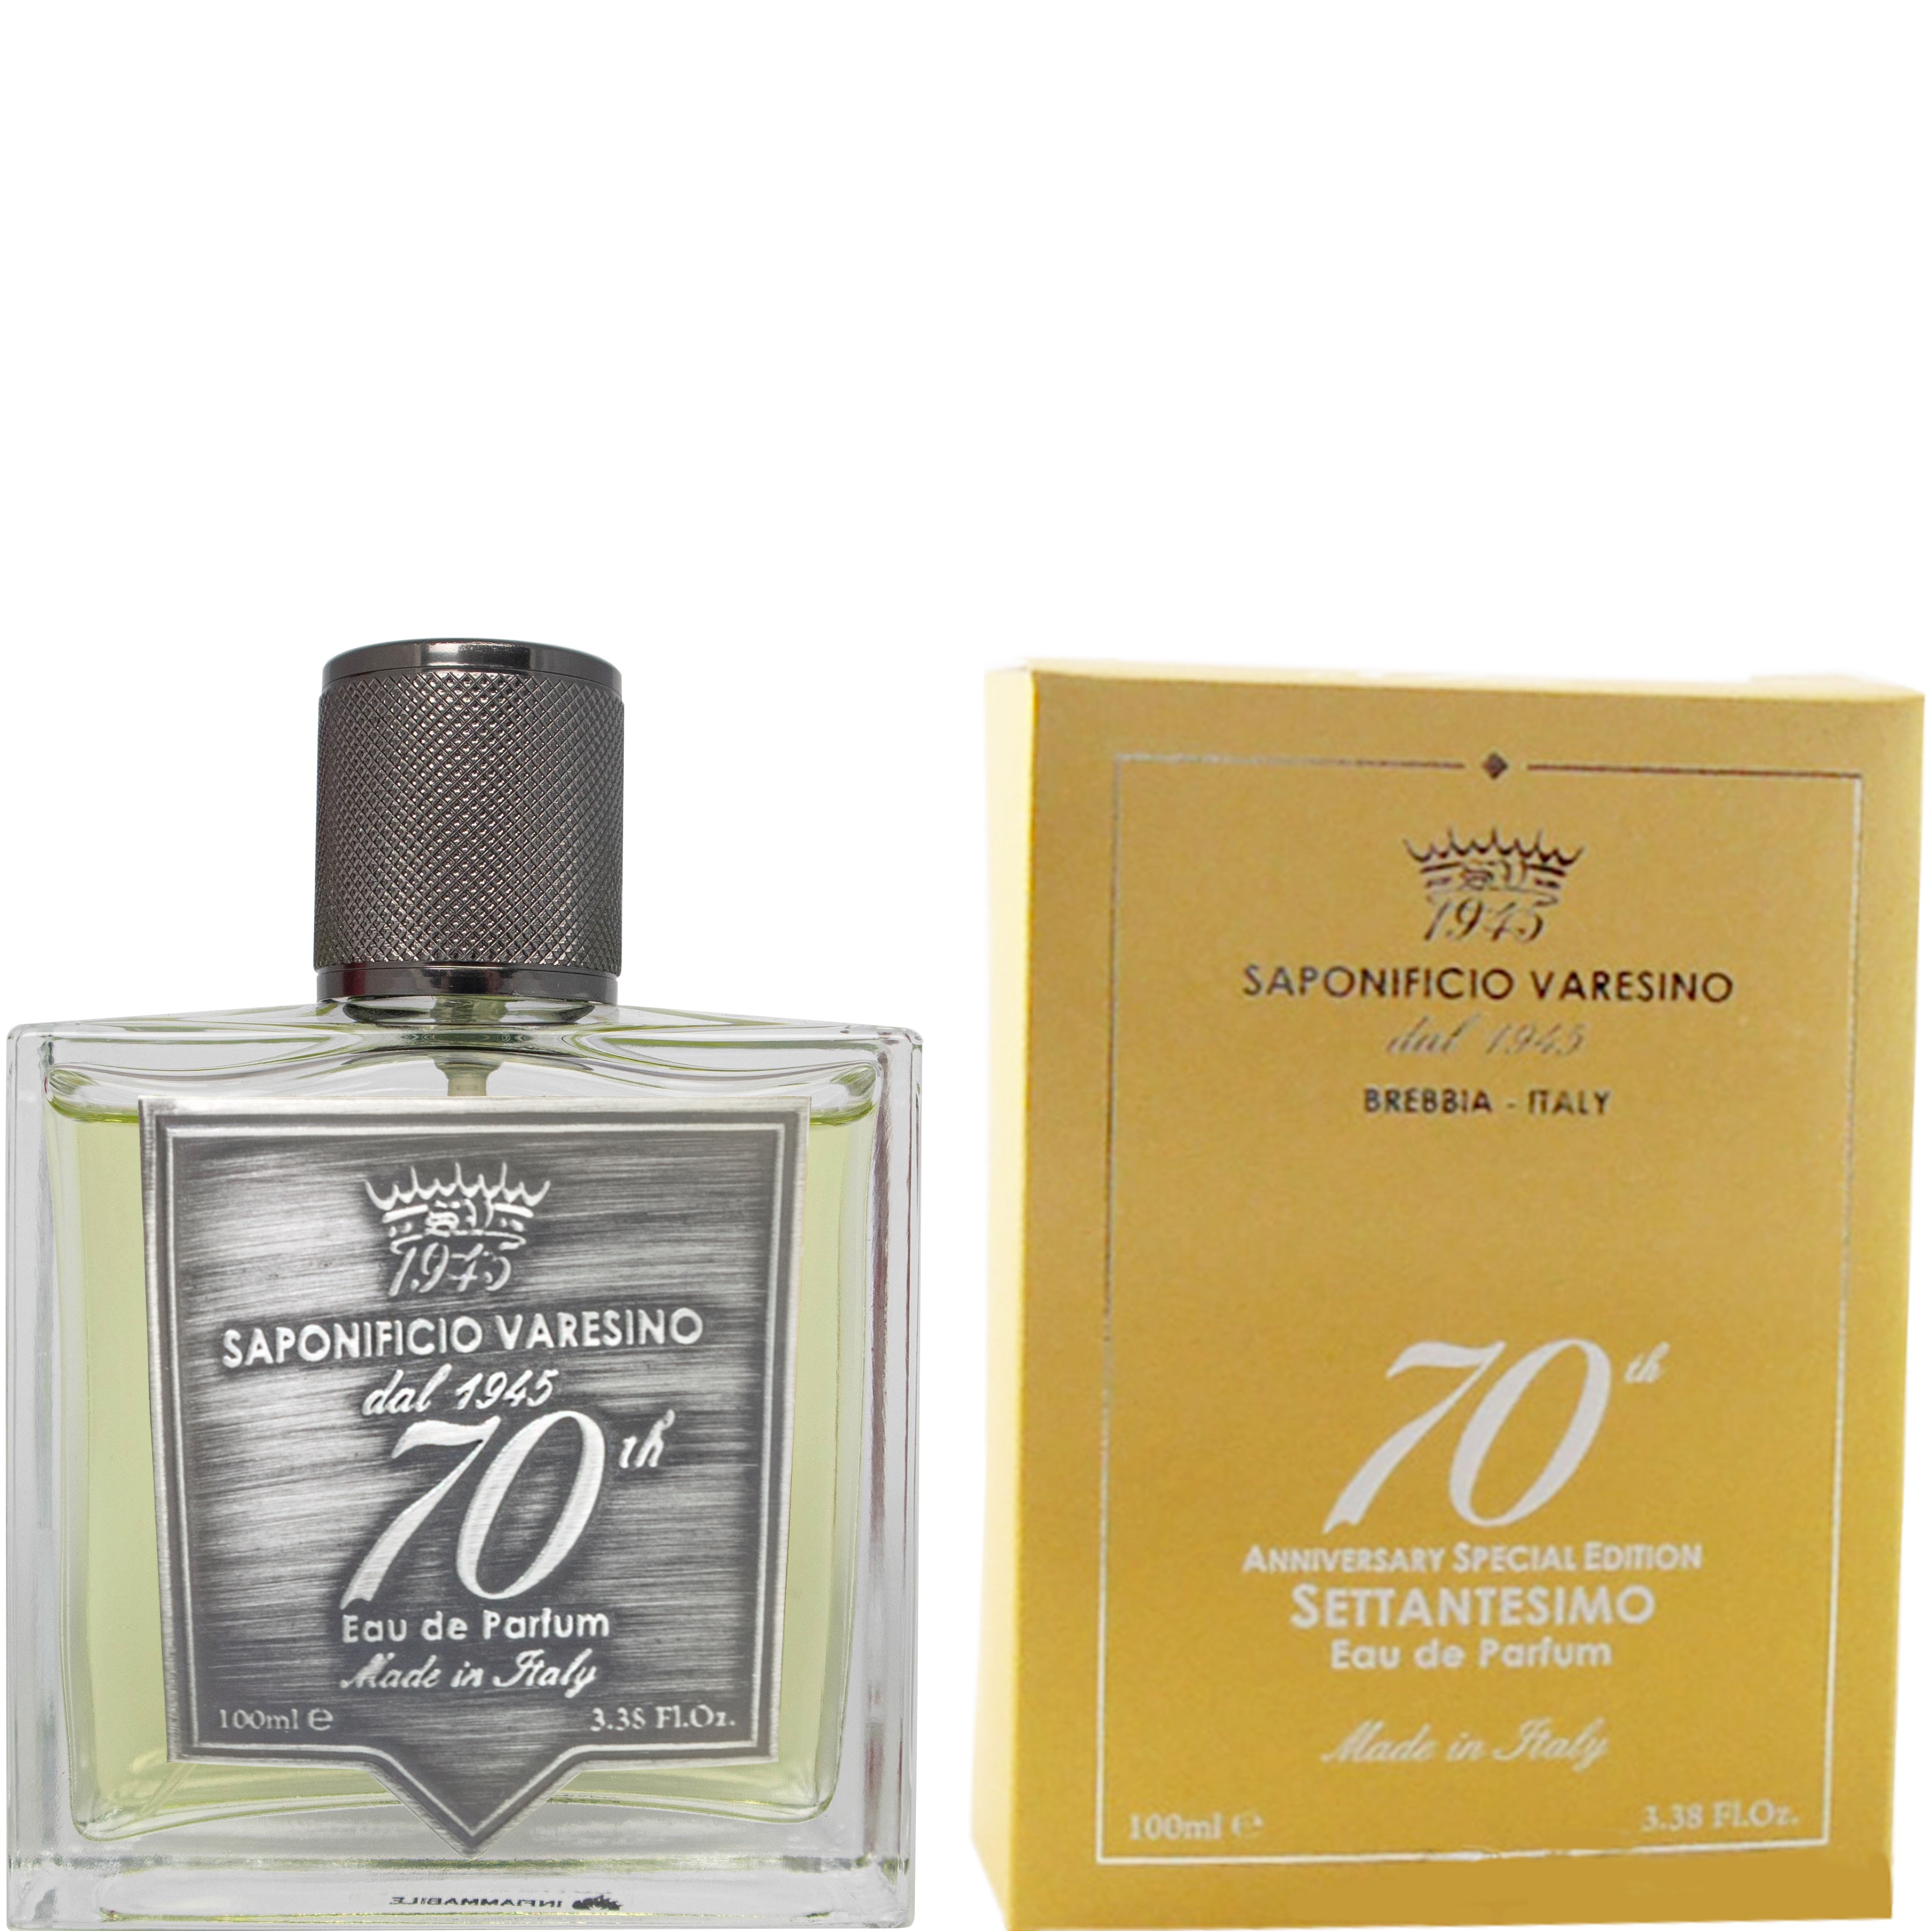 Eau de Parfum 70th Anniversary